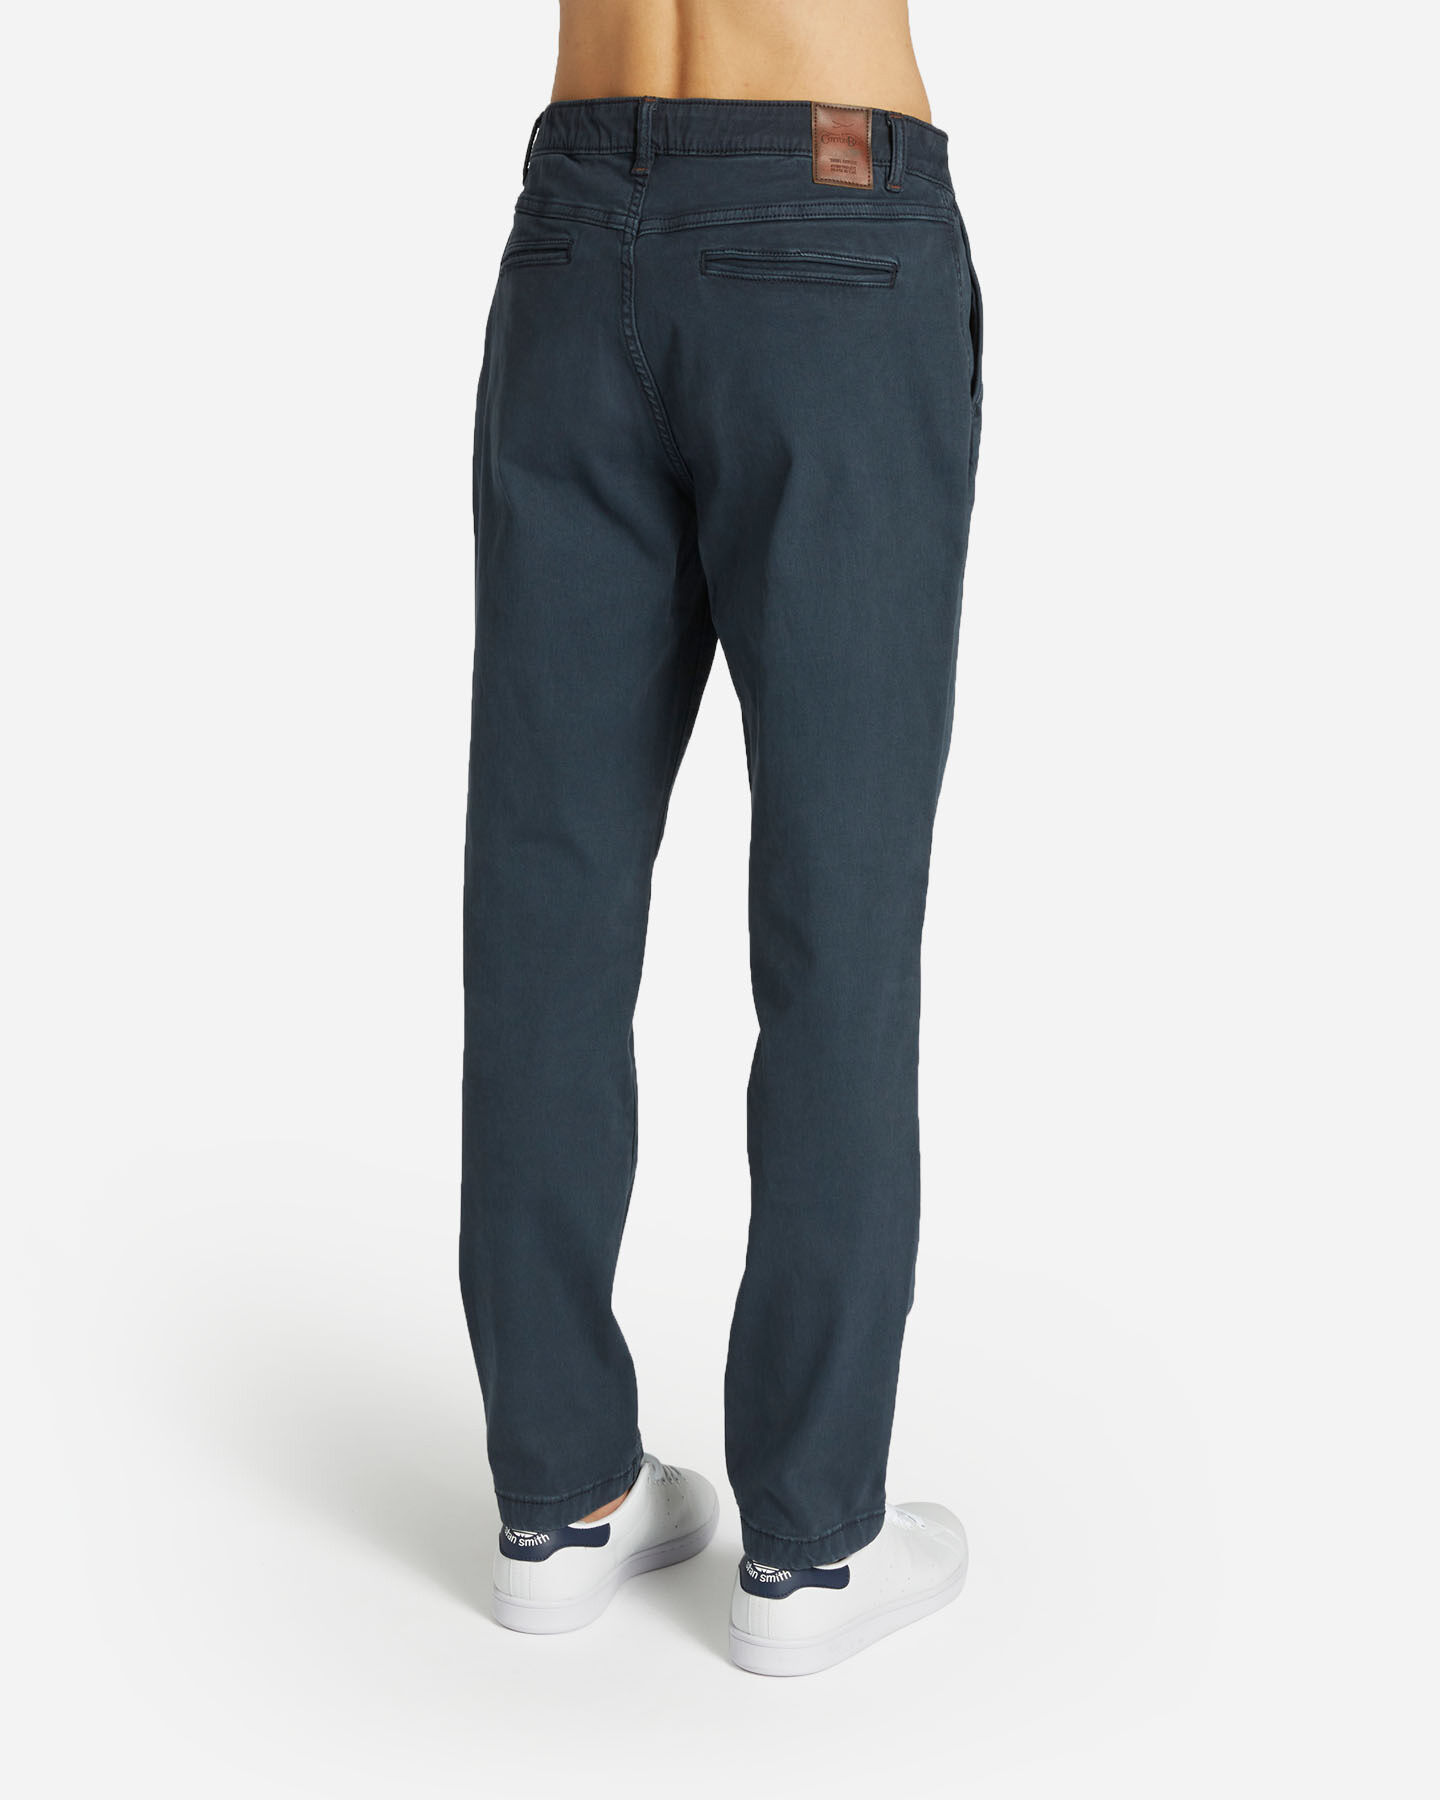  Pantalone COTTON BELT CHINO HYBRID M S4127002|516|32 scatto 1